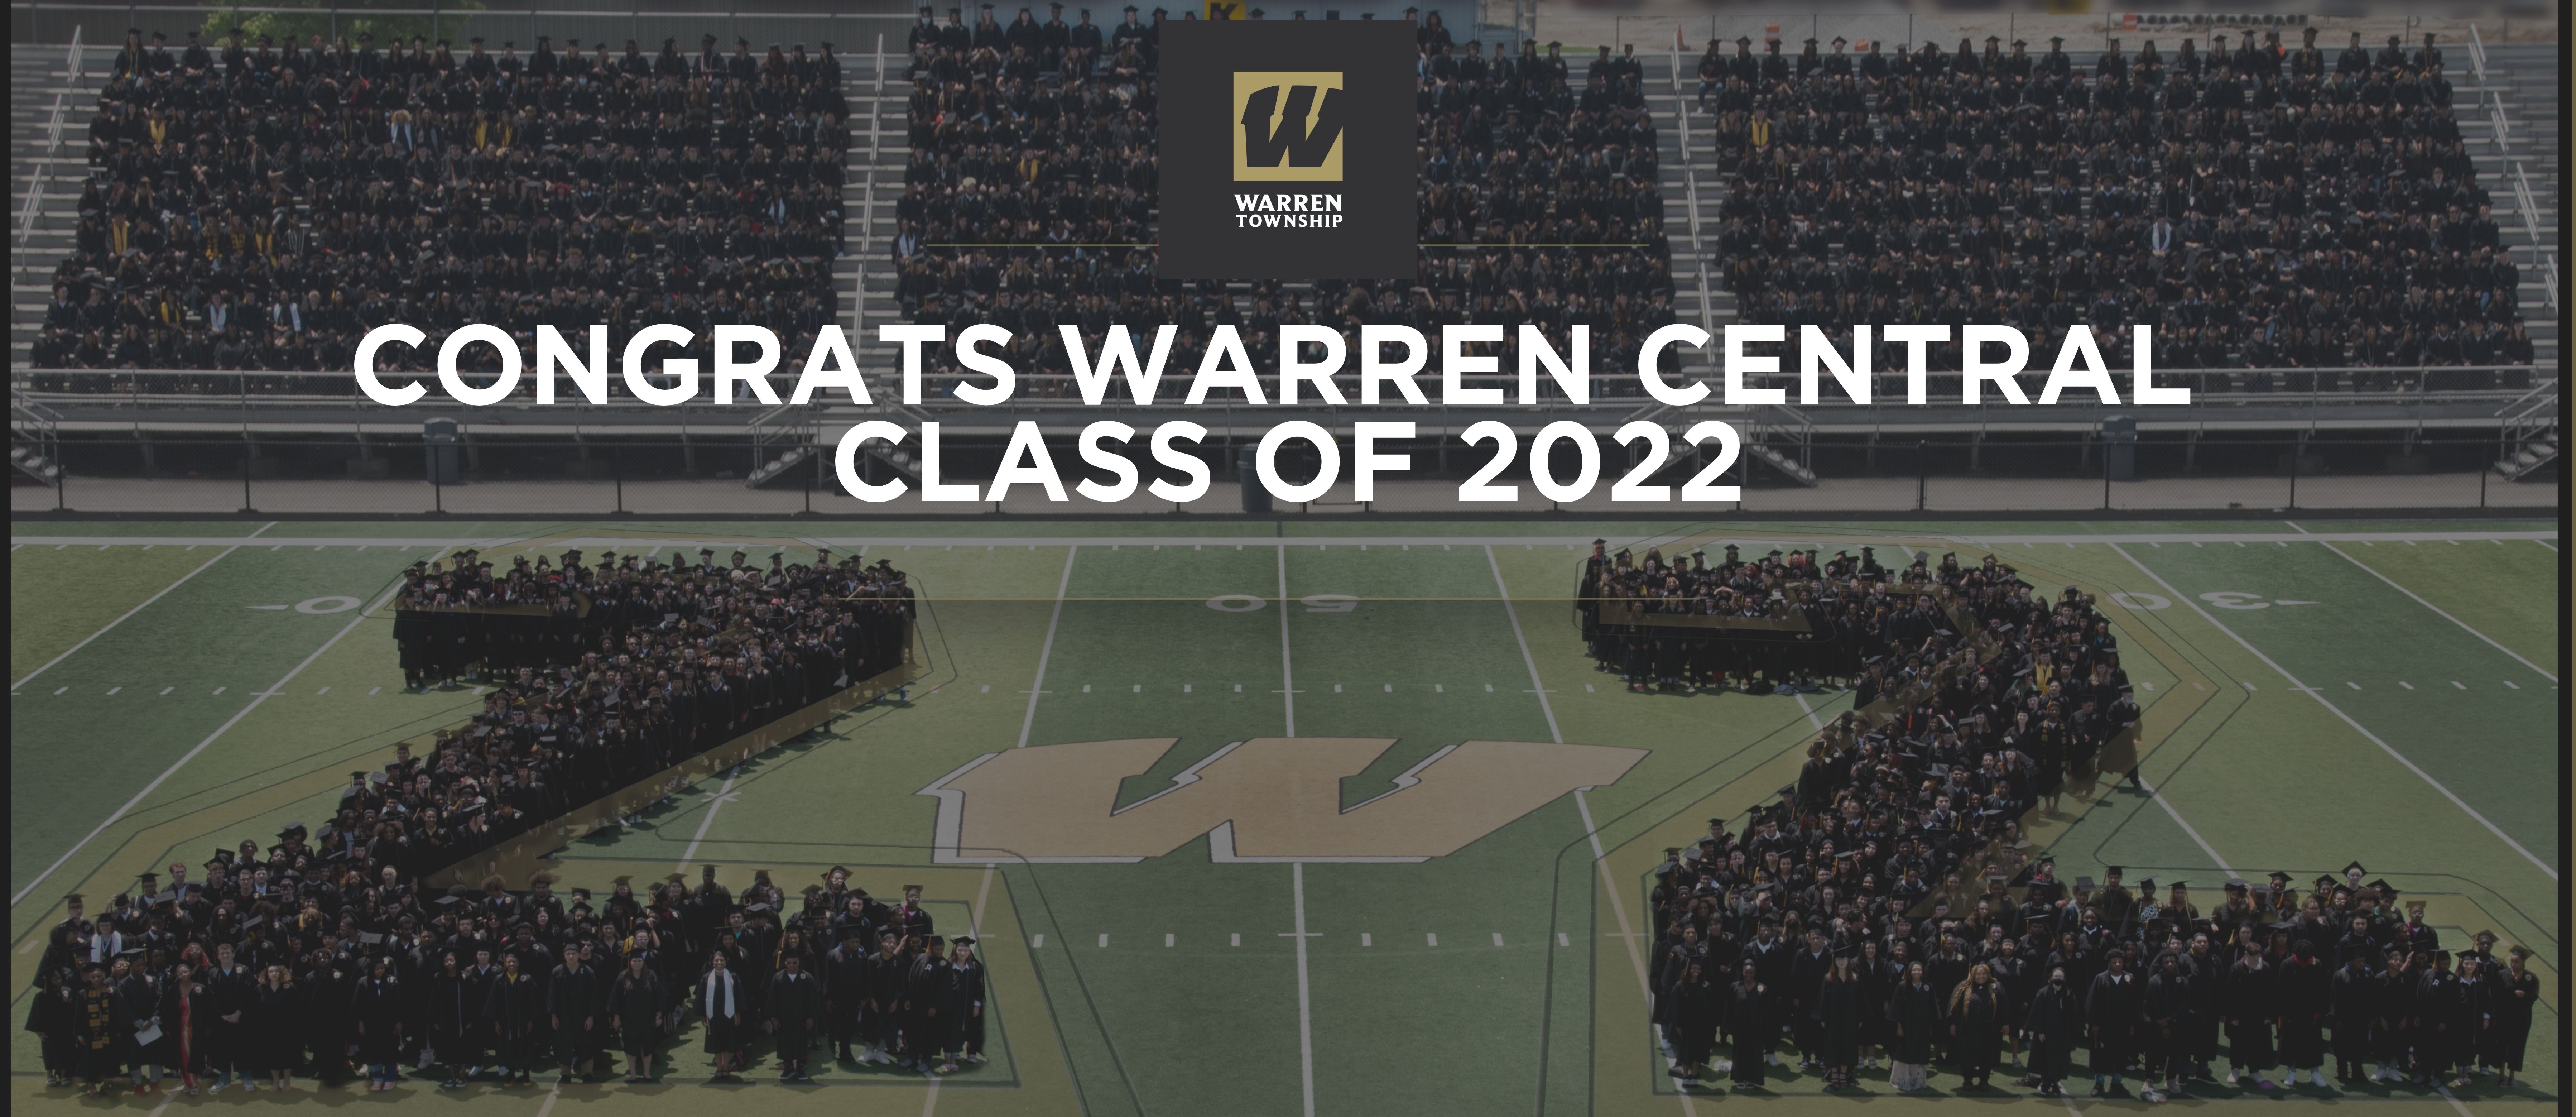 Congrats Warren Central Class of 2022 